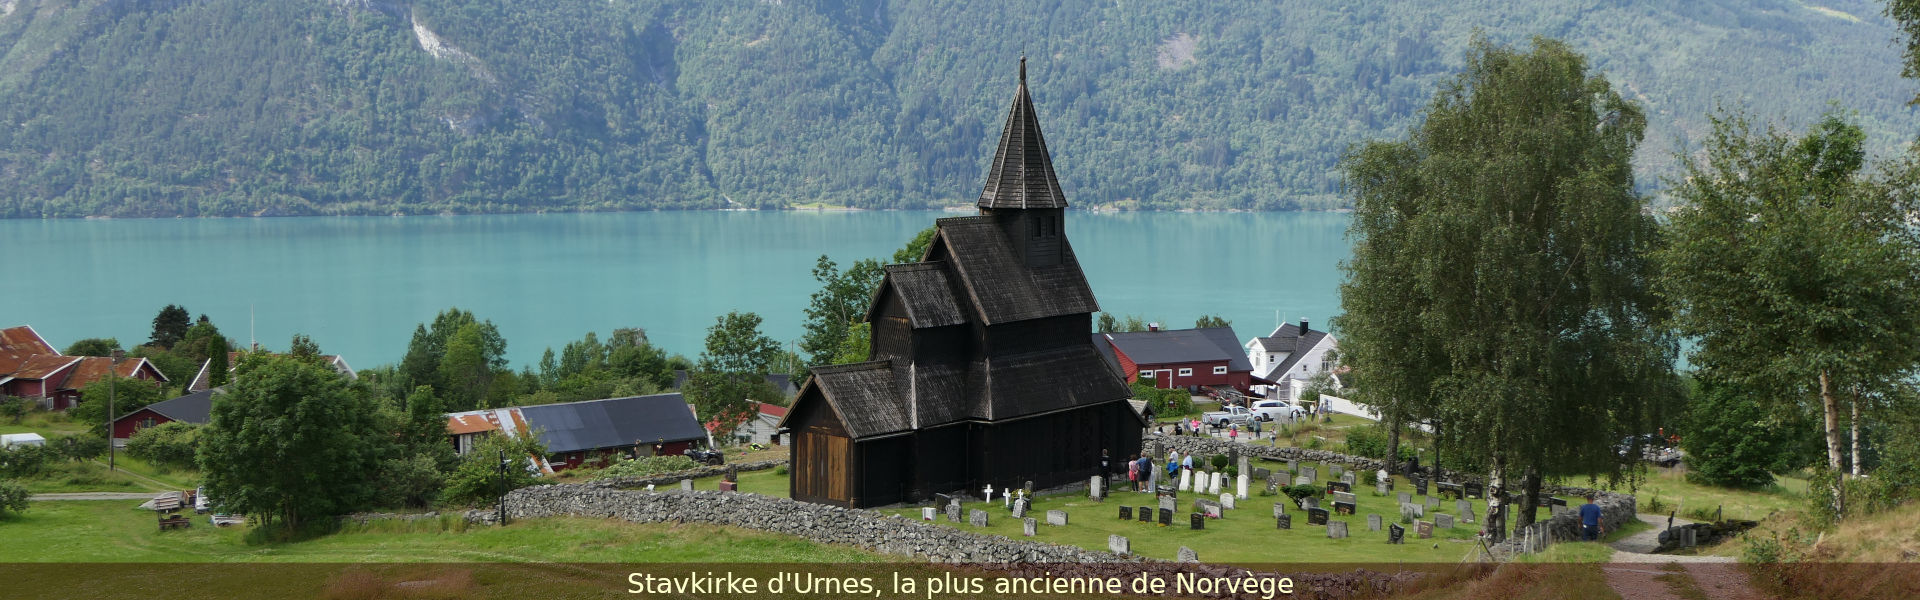 Stavkirke d'Urnes, la plus ancienne de Norvège